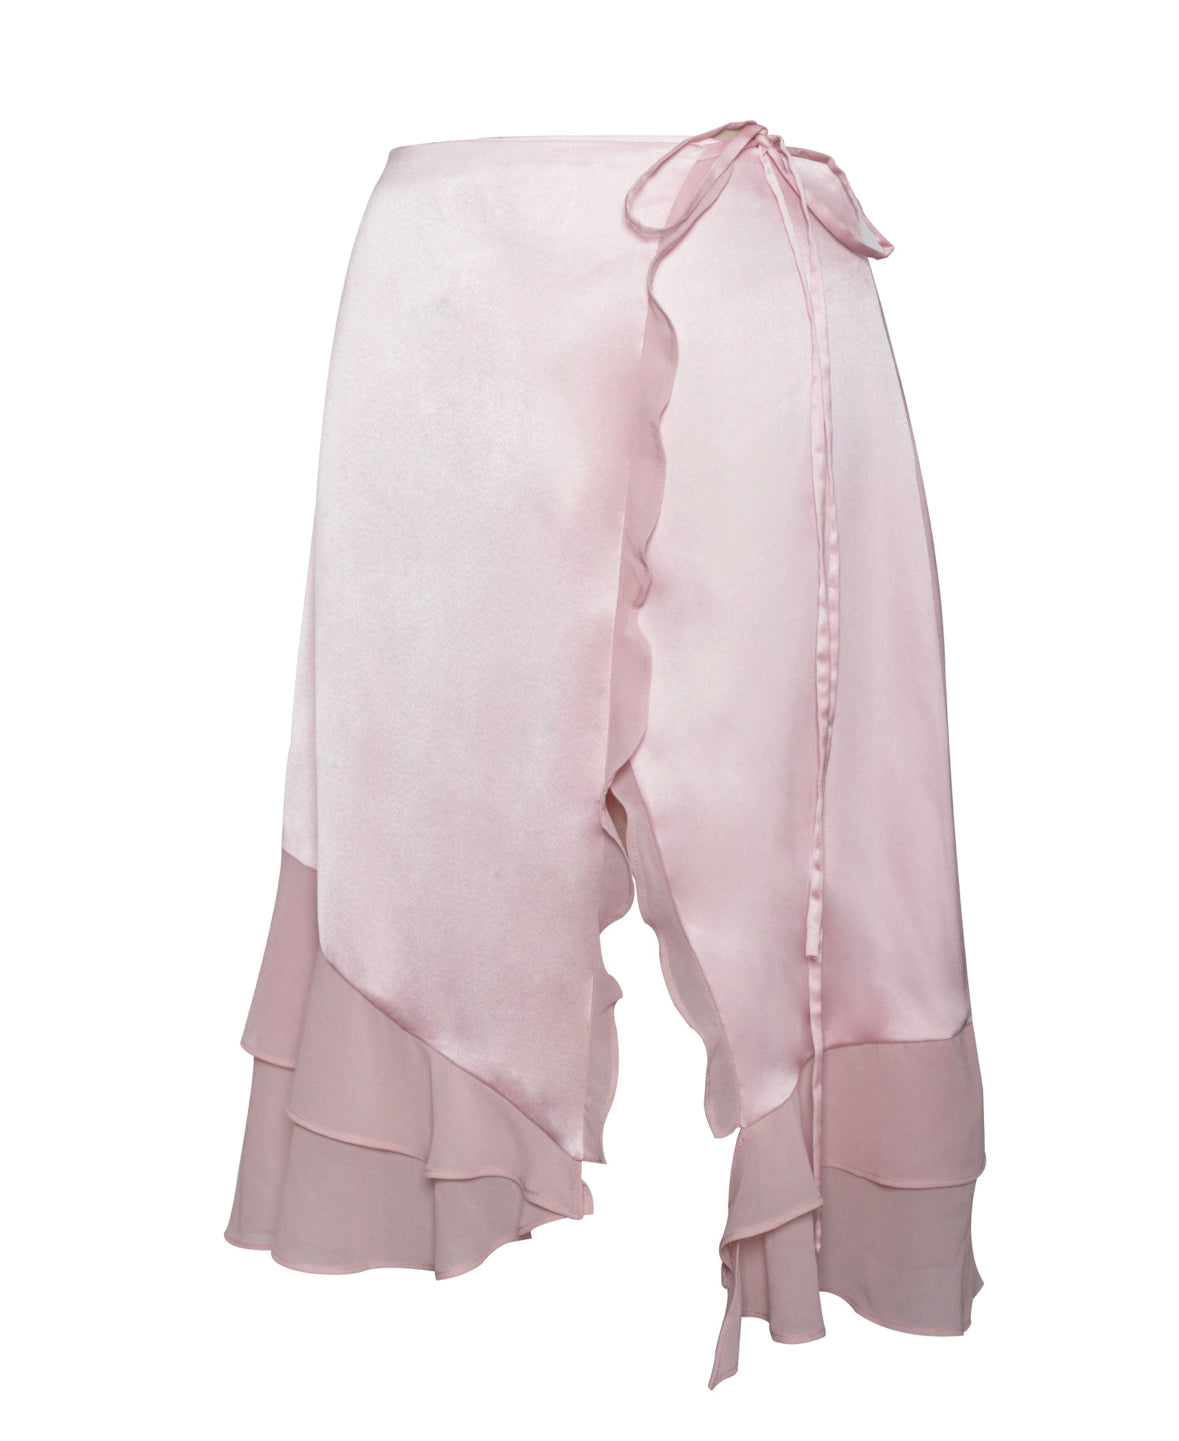 Sophia soft pink skirt